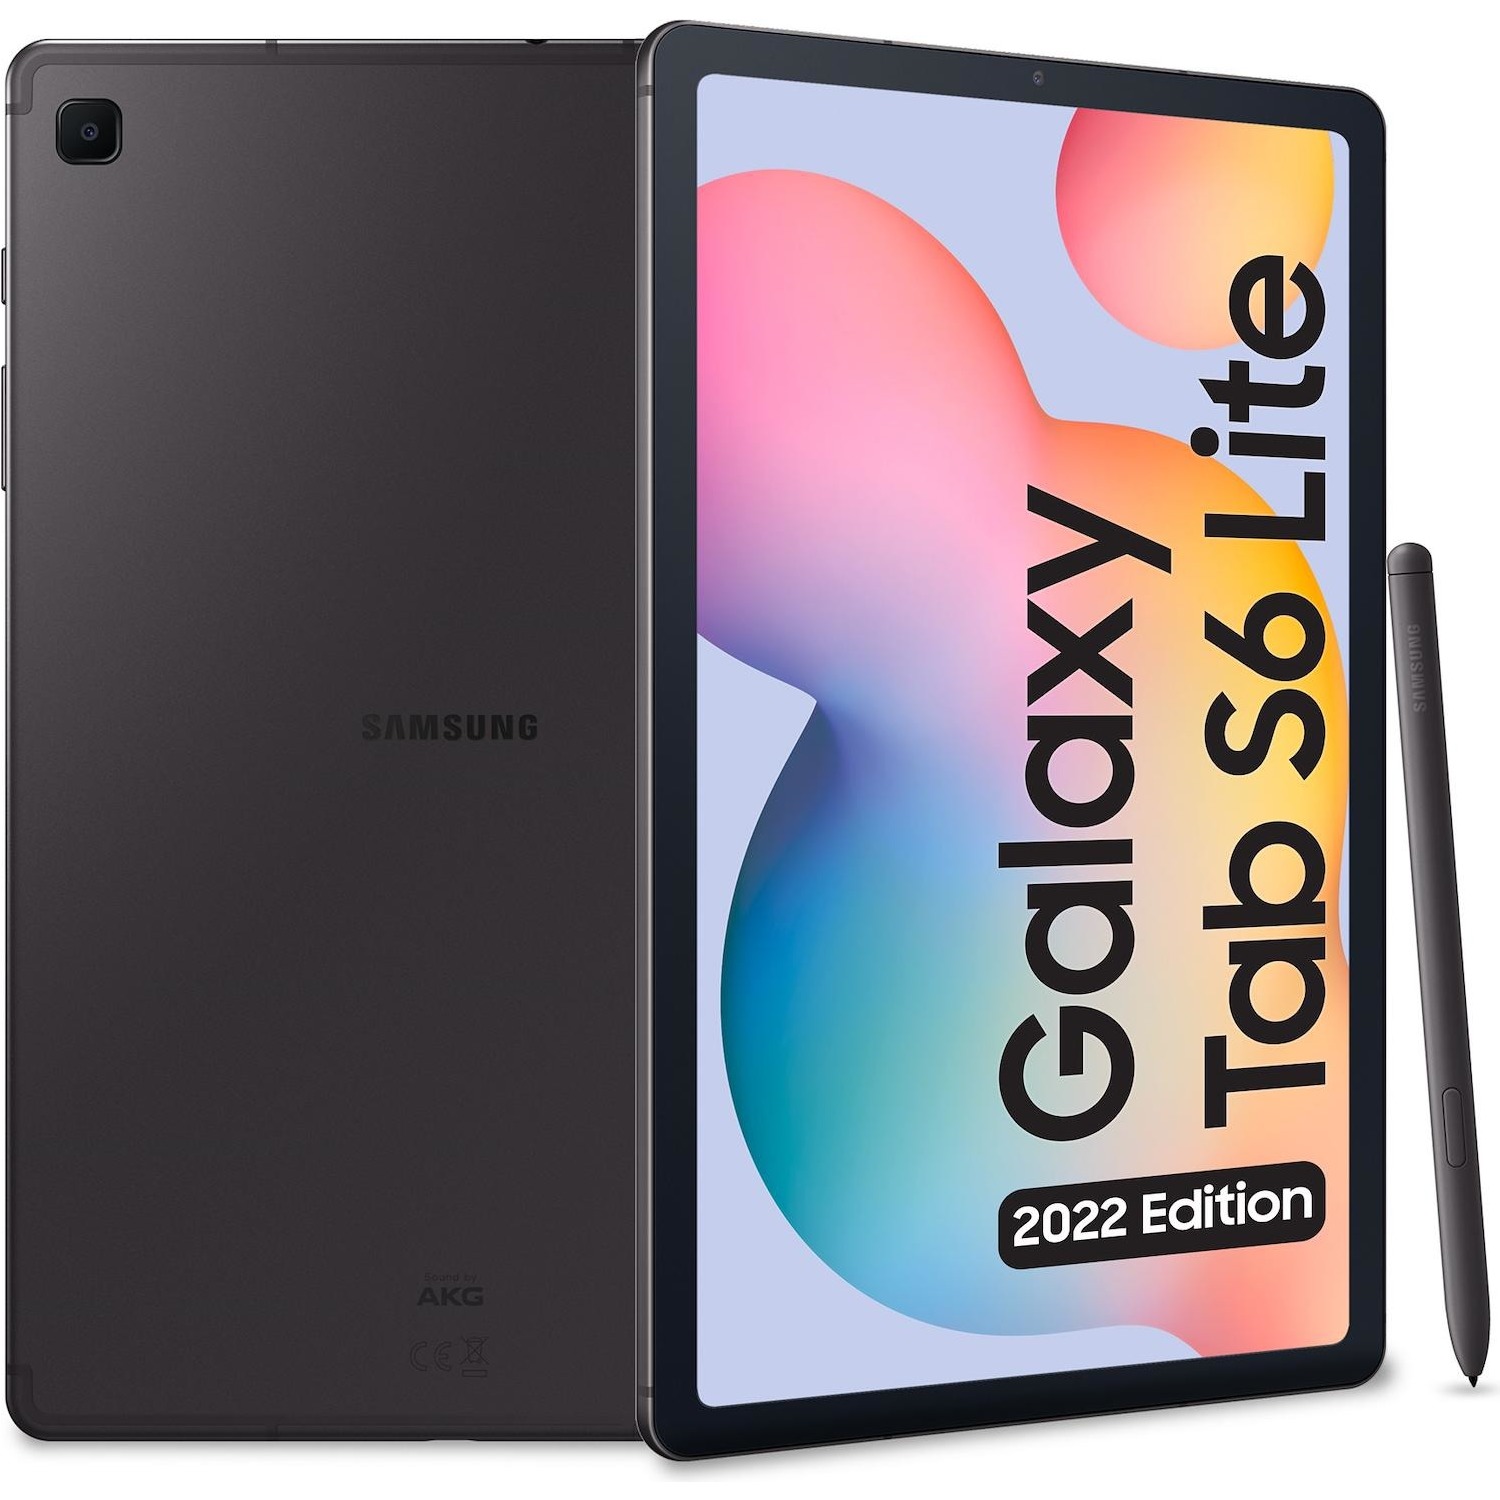 Immagine per Tablet Samsung Galaxy Tab S6 Lite 64GB WiFi       grigio da DIMOStore